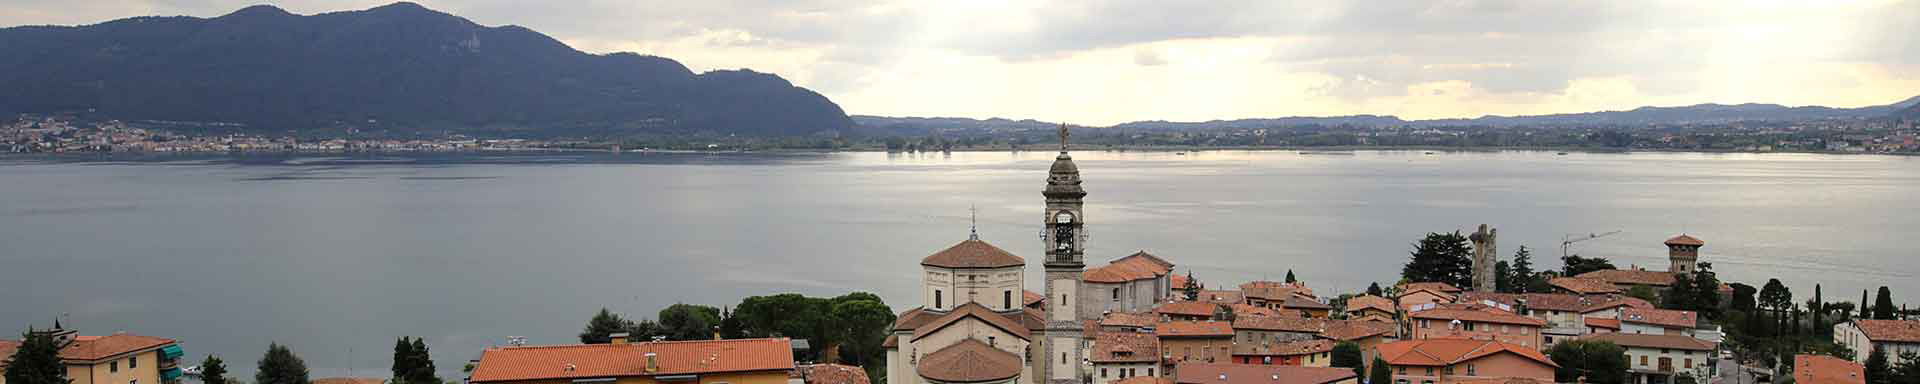 Vista del lago con campanile in primo piano